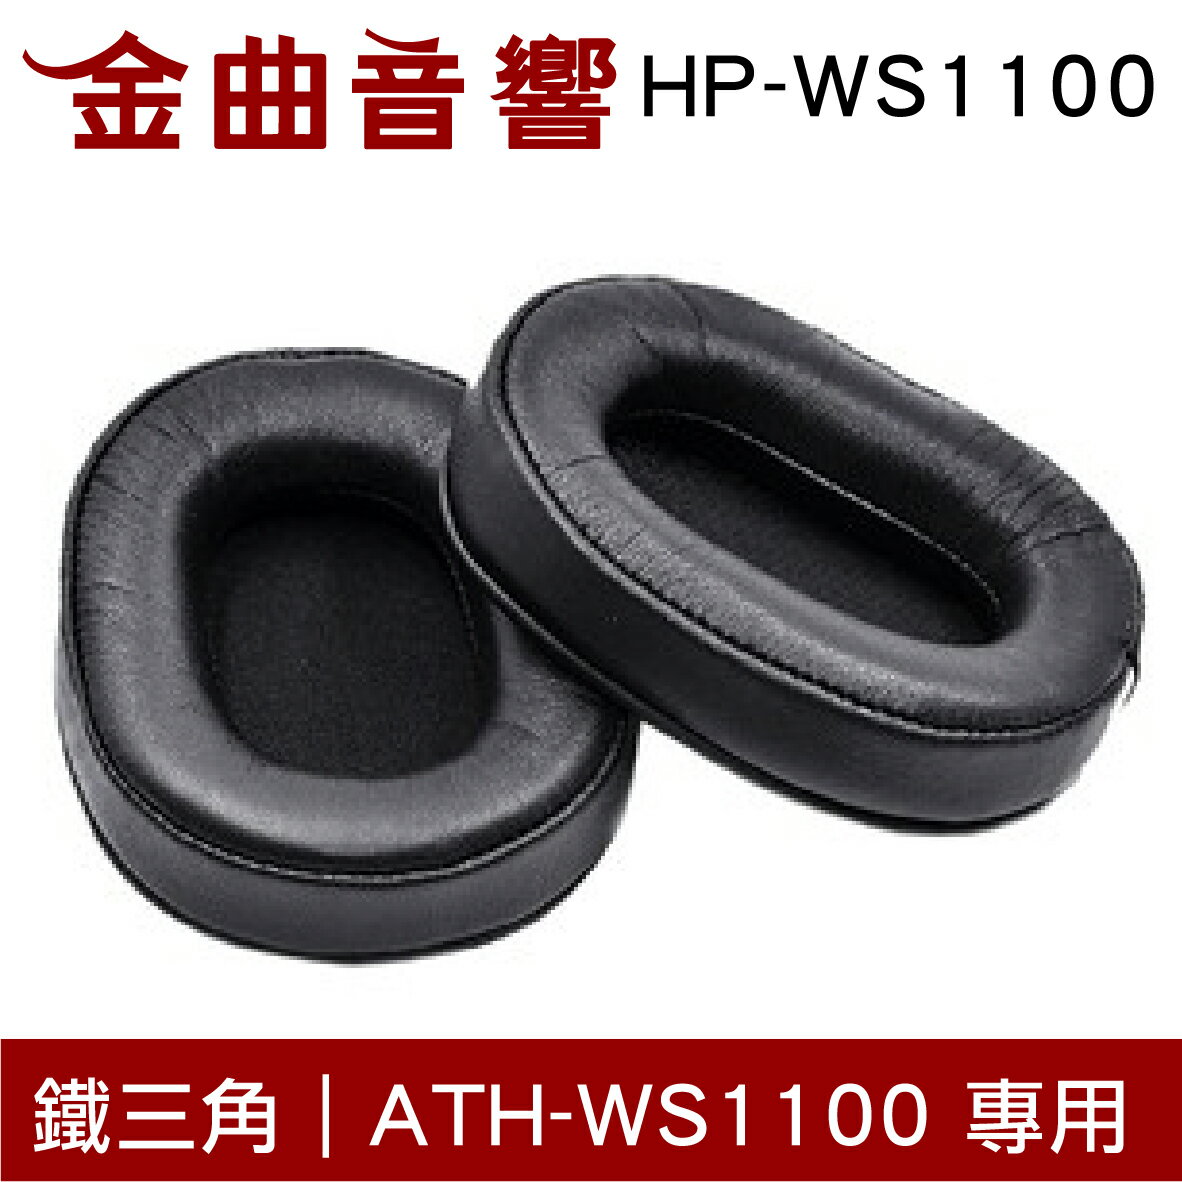 鐵三角 HP-WS1100 替換耳罩 ATH-WS1100 專用 | 金曲音響